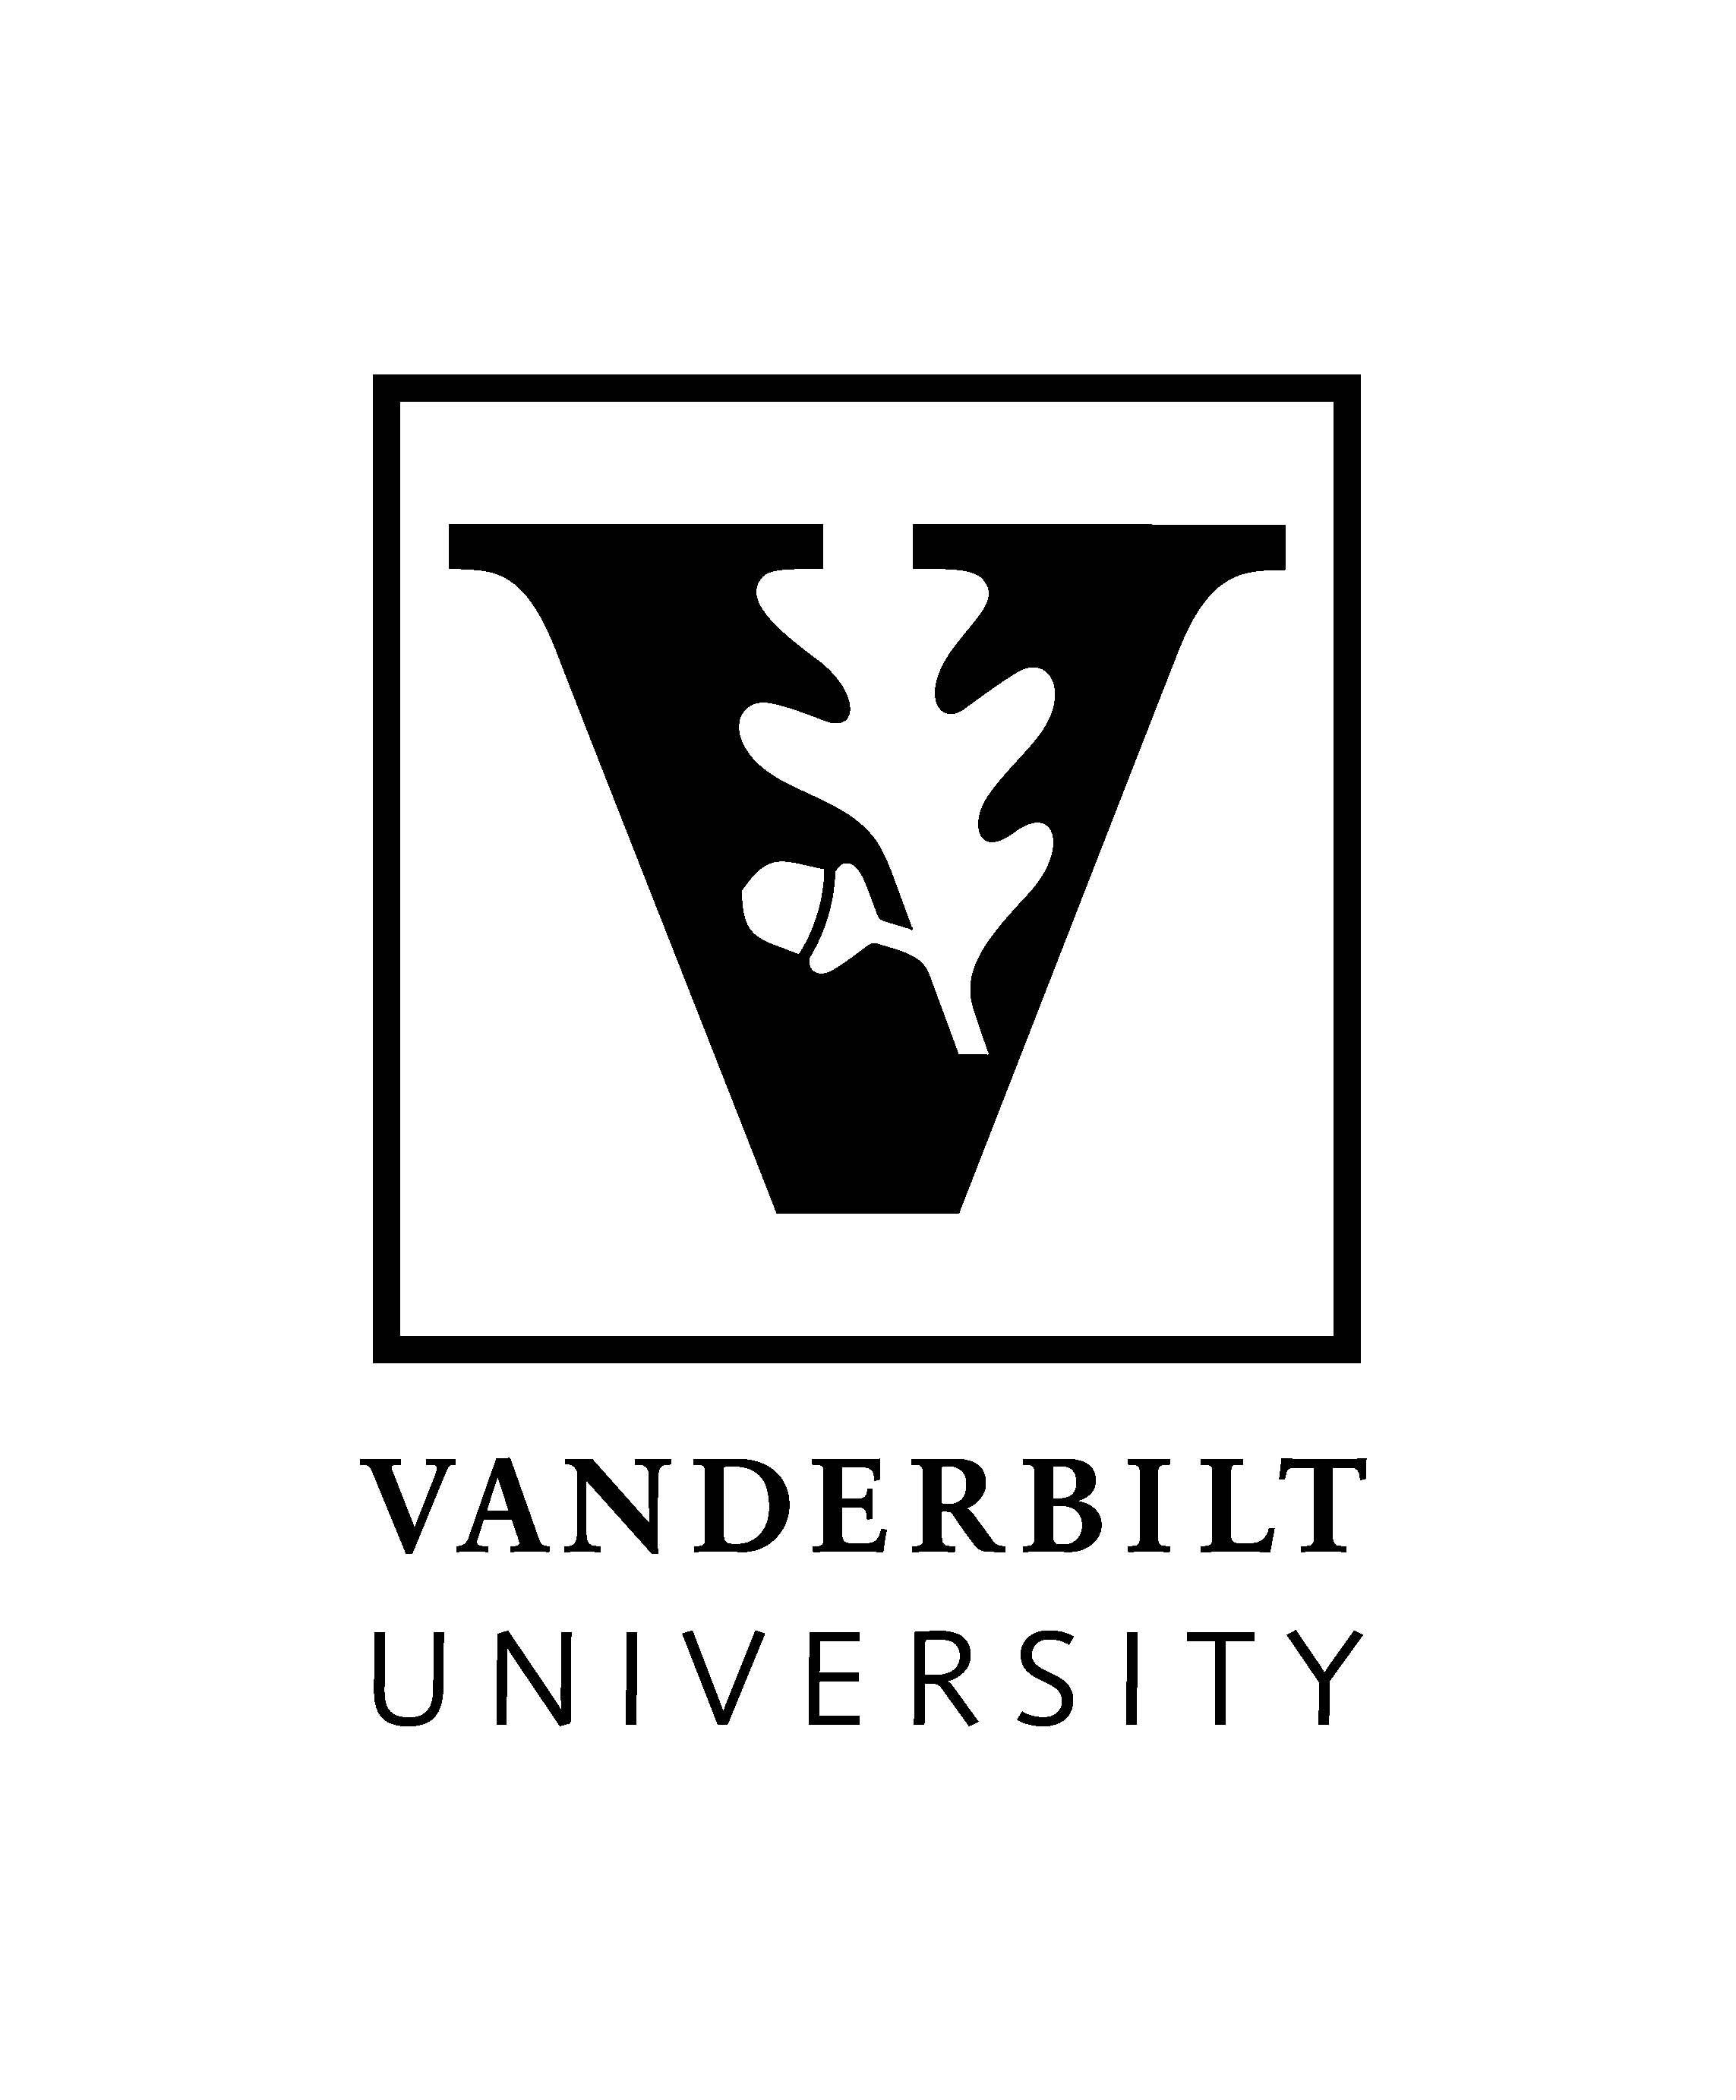 Vanderbilt Logo - Official Vanderbilt University Logos | Vanderbilt News | Vanderbilt ...